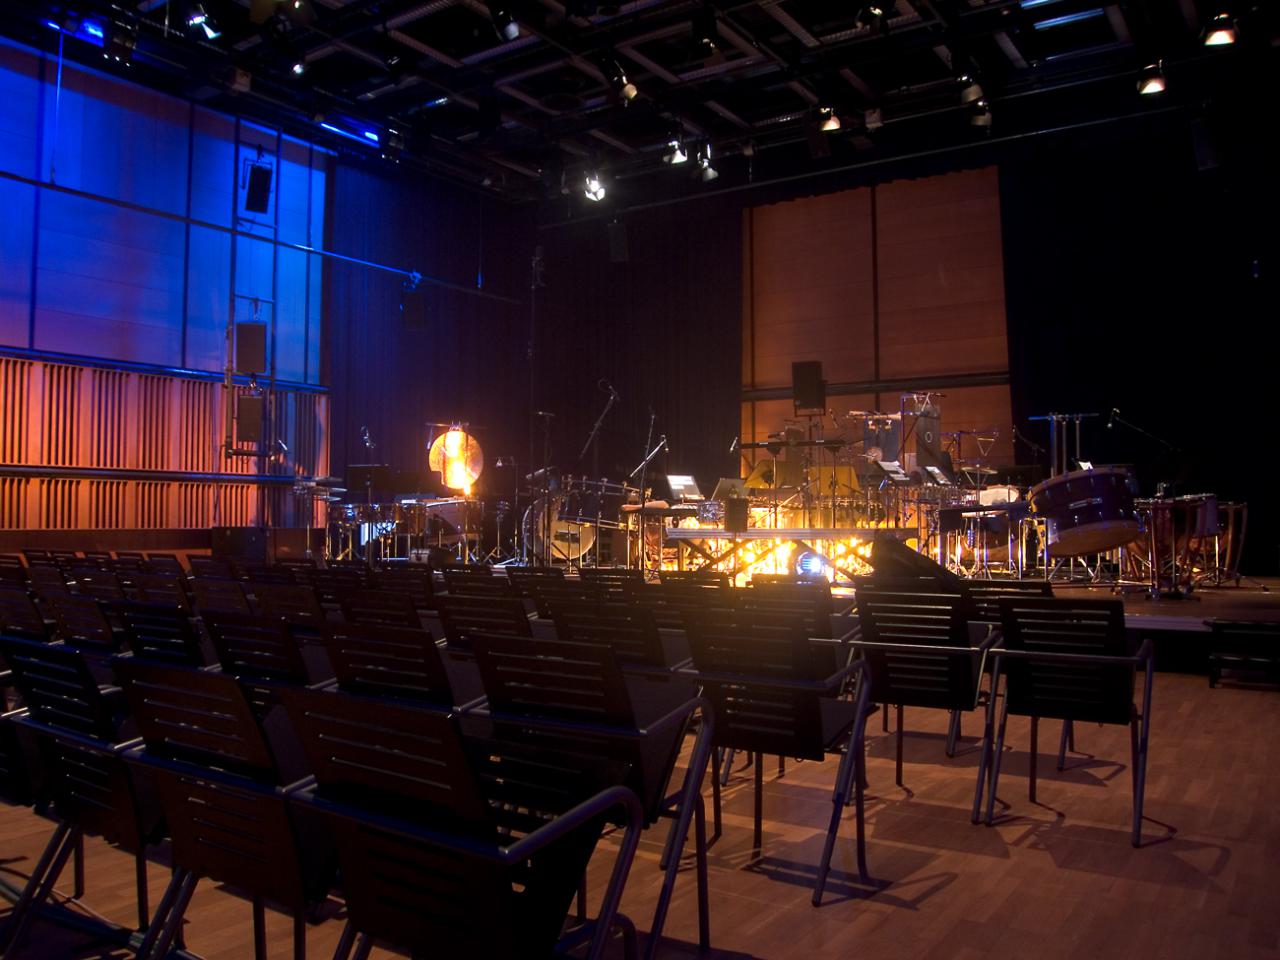 Leere Reihenbestuhlung im ZKM_Kubus mit Orchesteraufbau auf der Bühne